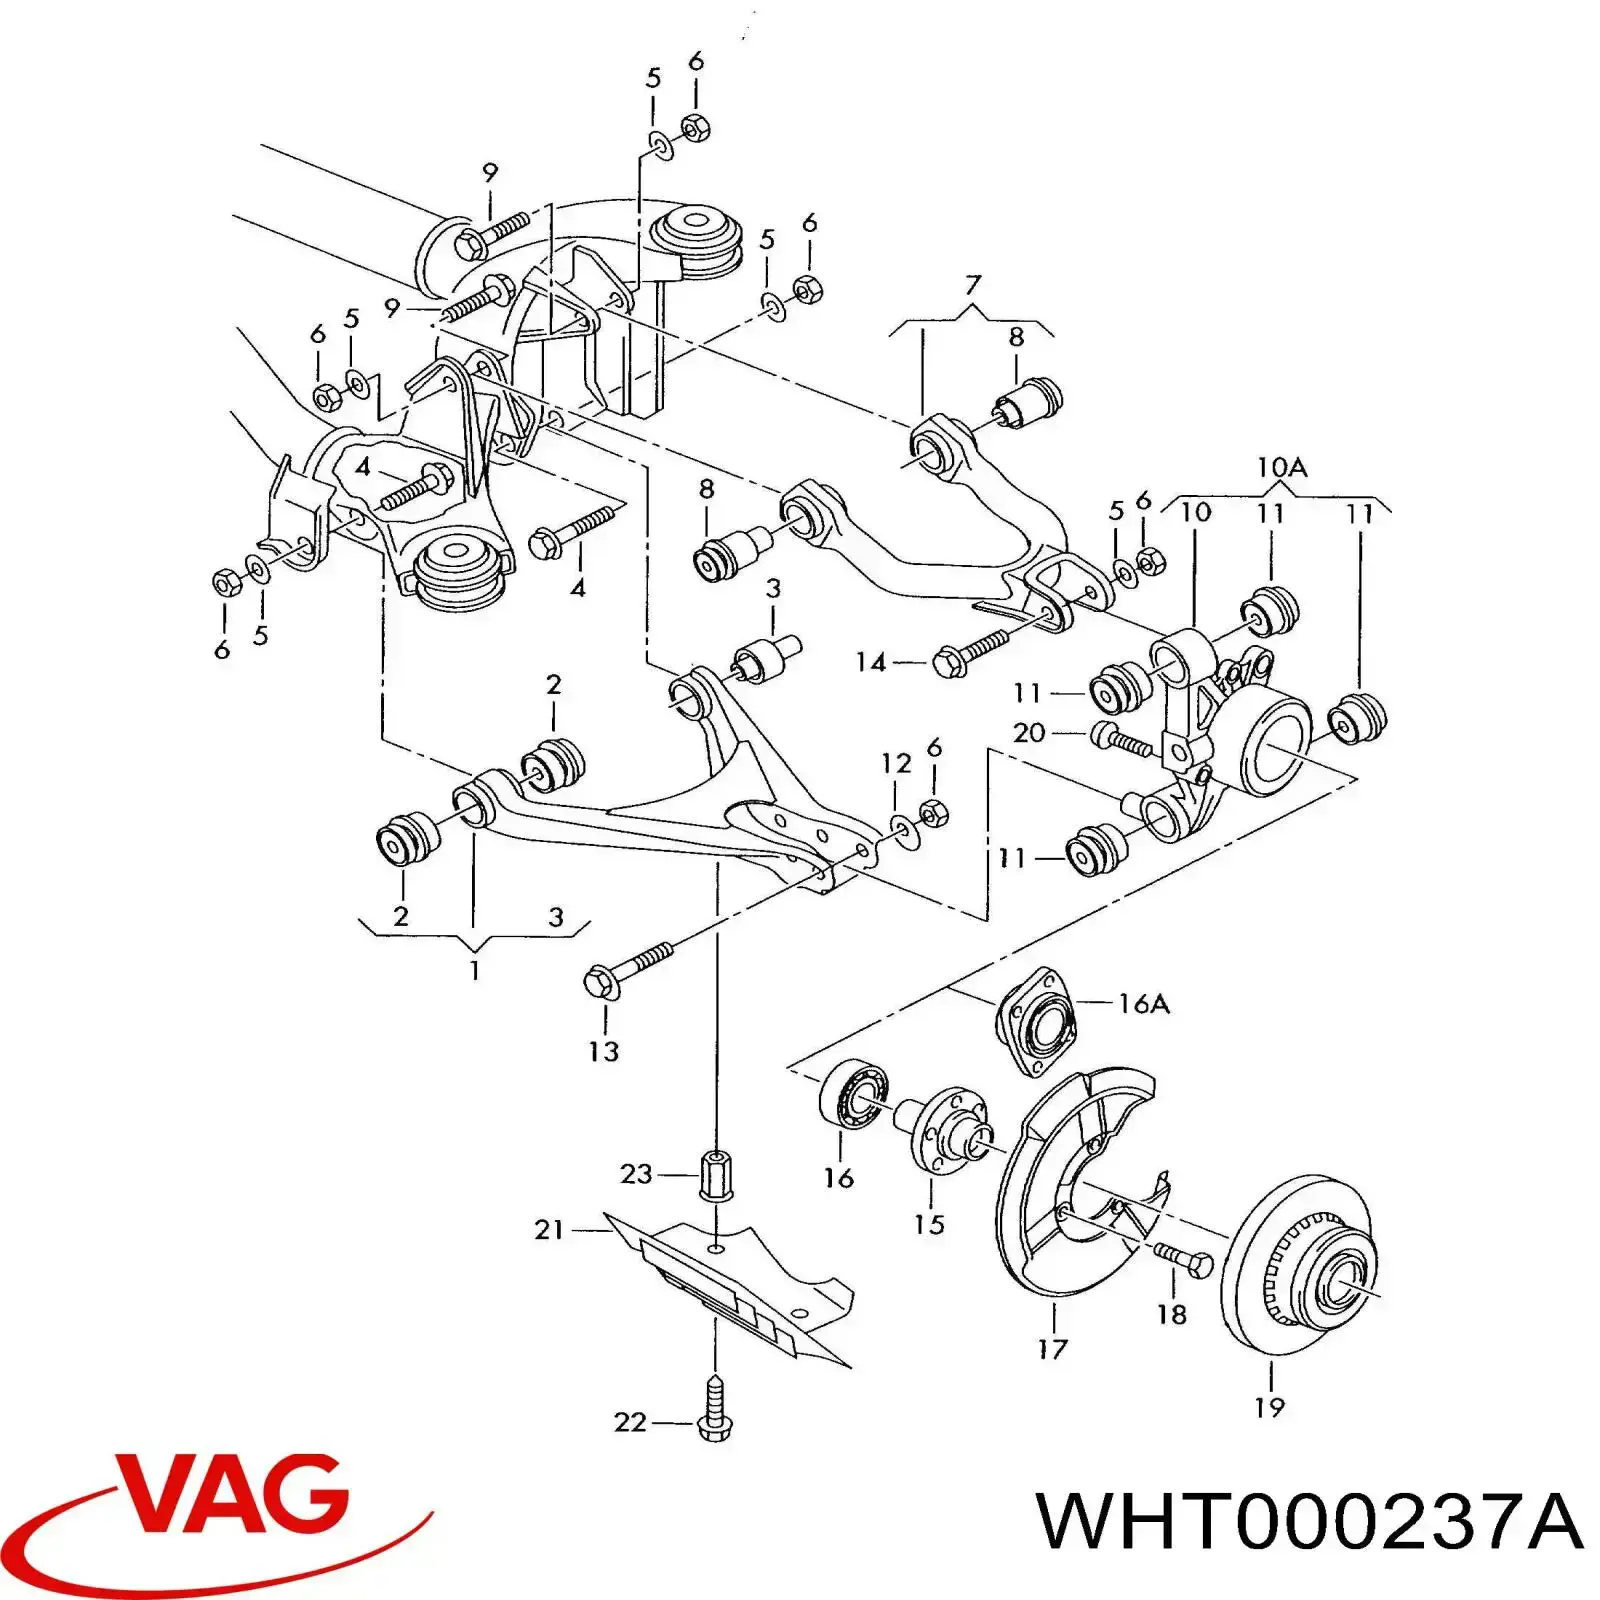 WHT000237A VAG tornillo de rótula de suspensión delantera a mangueta